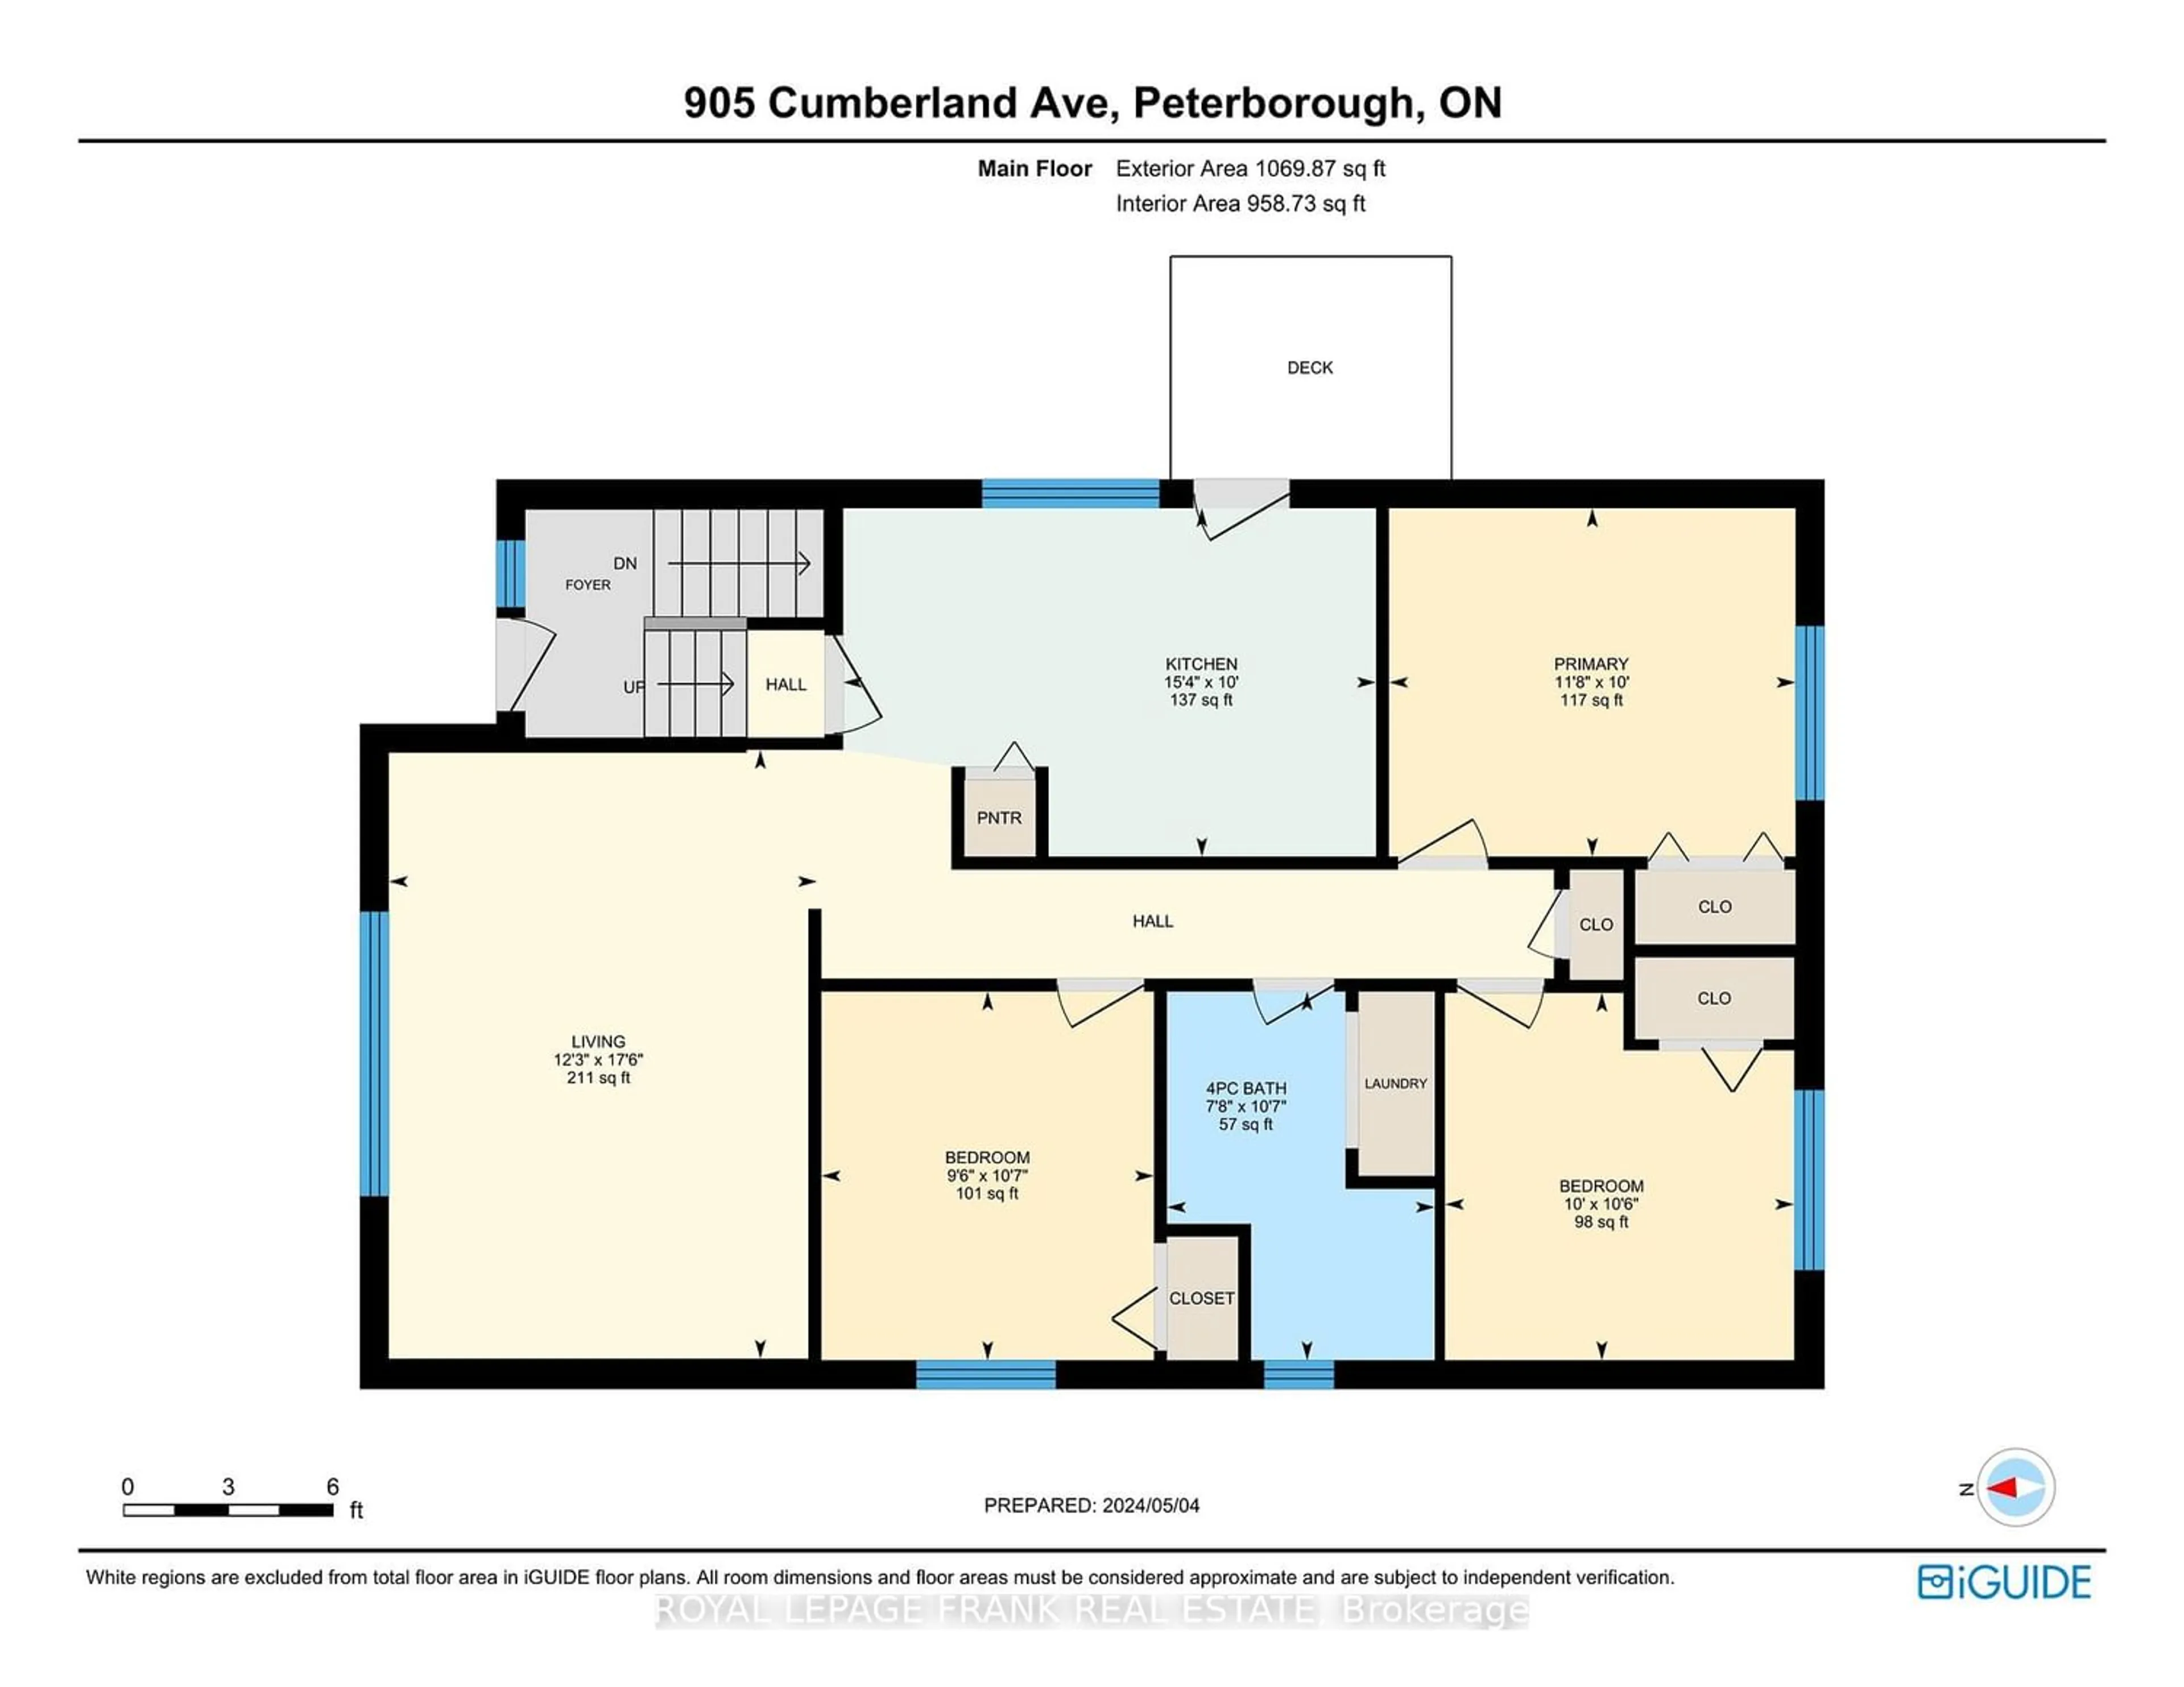 Floor plan for 905 Cumberland Ave, Peterborough Ontario K9H 7B3